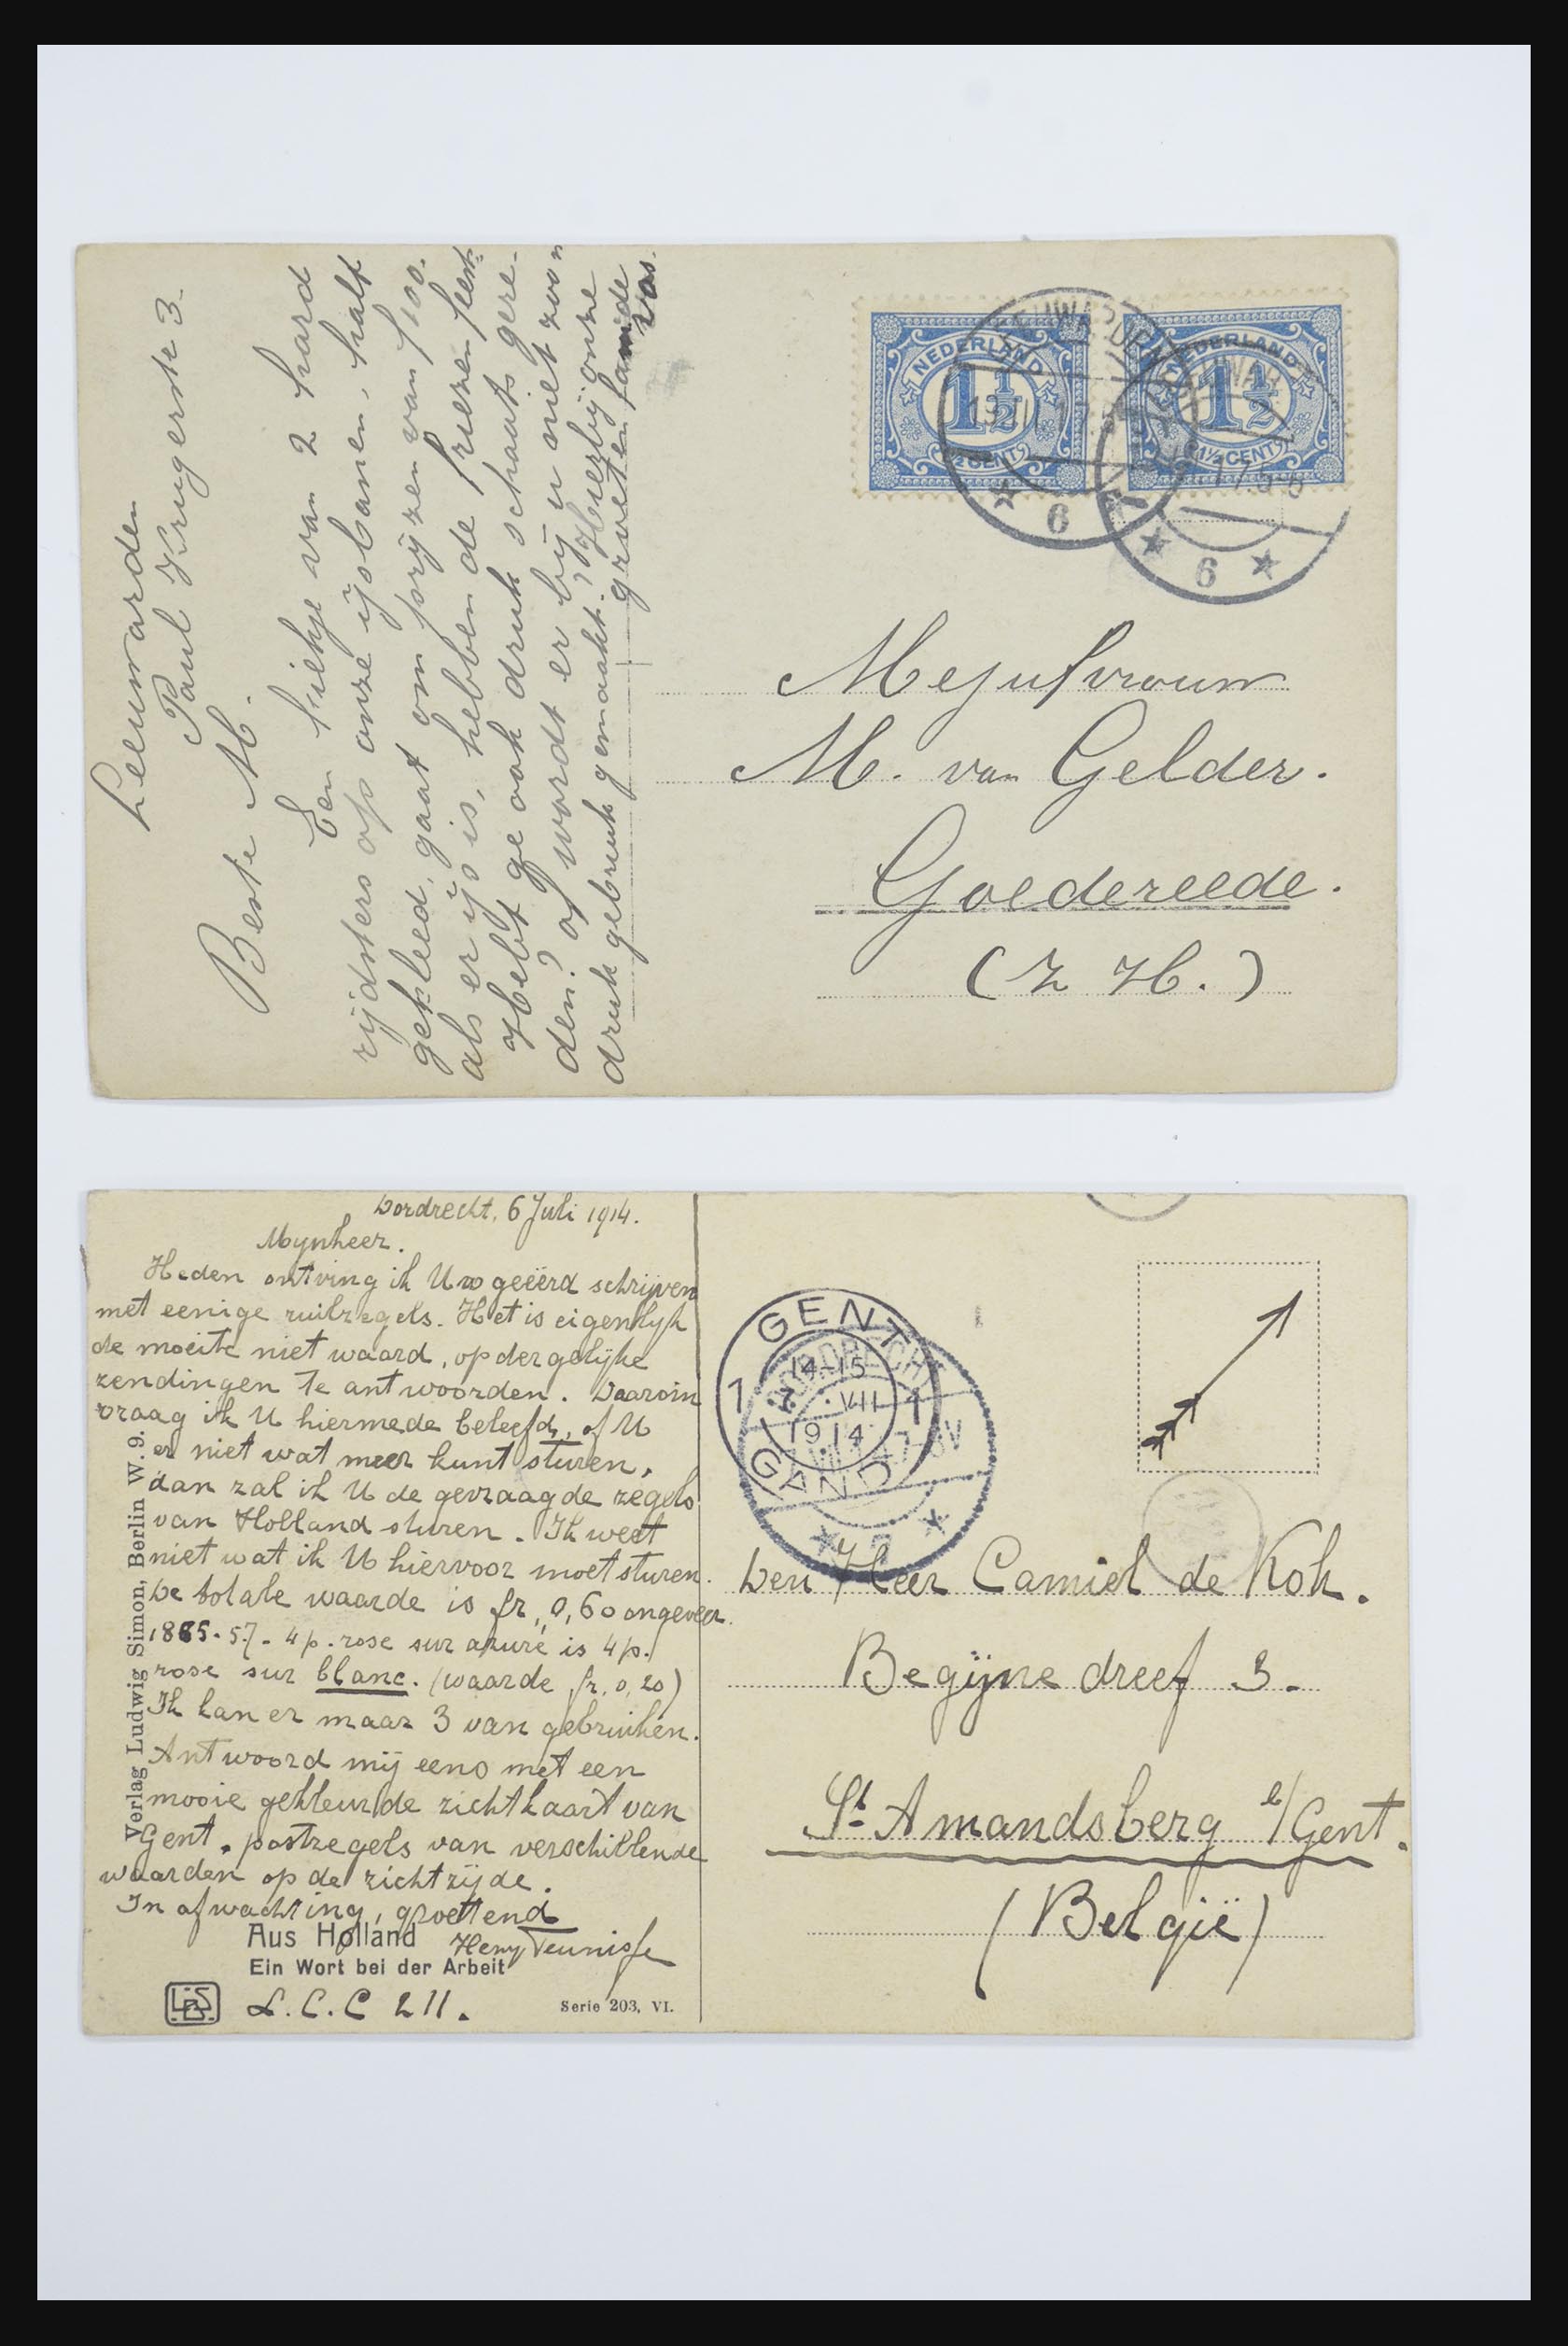 31668 025 - 31668 Nederland ansichtkaarten 1905-1935.